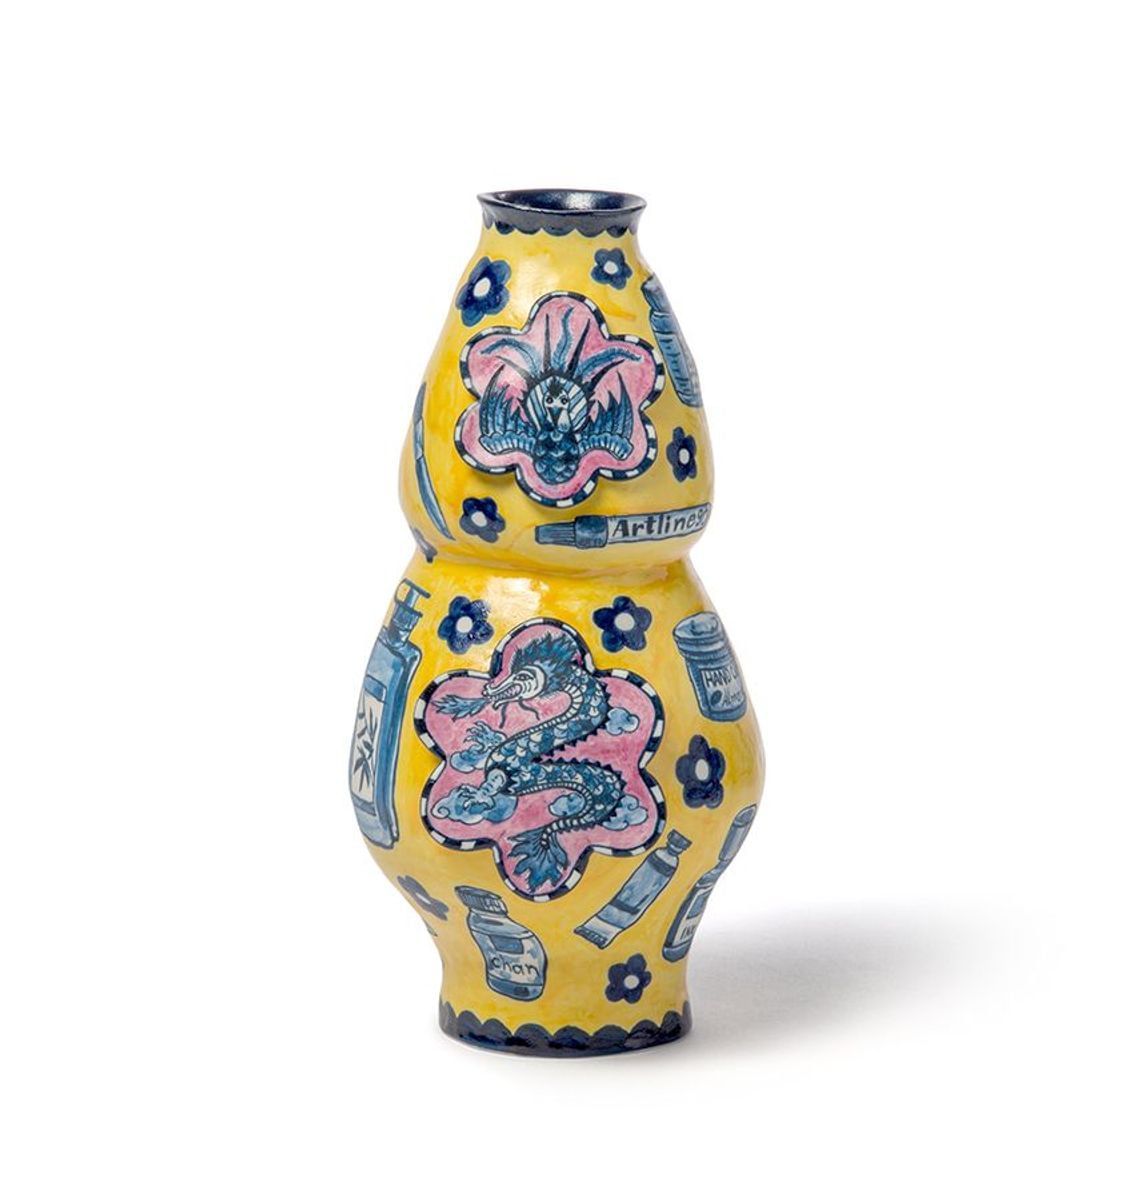 ClayLAB (Vase Series) (front) by Vipoo Srivilasa